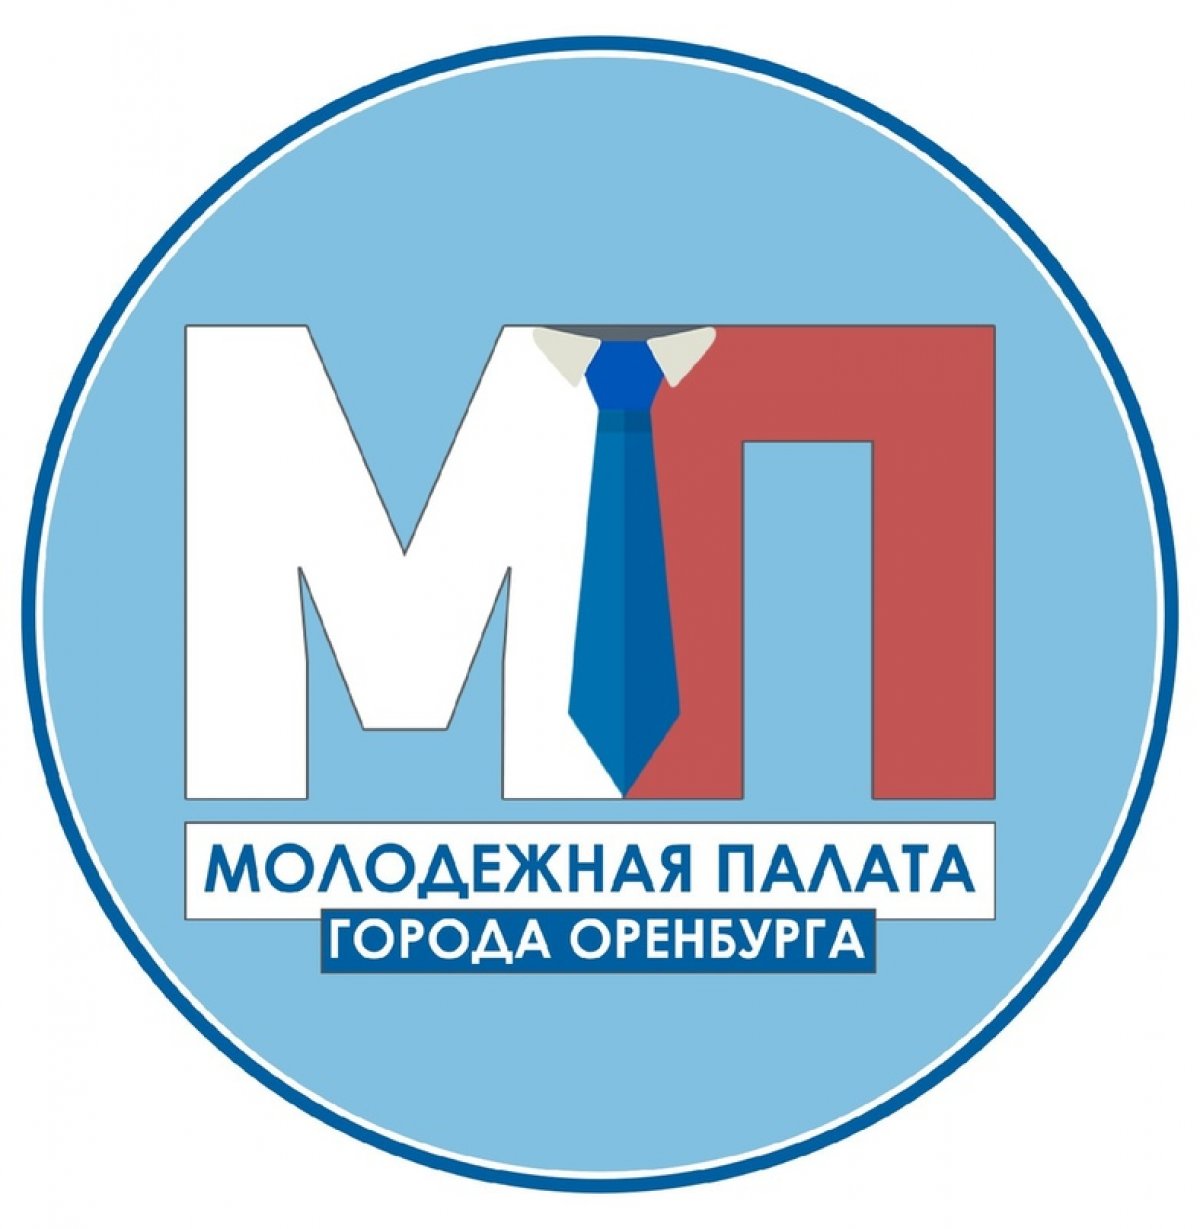 👨‍🎓Управление молодежной политики администрации города Оренбурга информирует о предстоящих выборах в Молодежную палату города Оренбурга III созыва 2020-2022 гг.👩‍💼